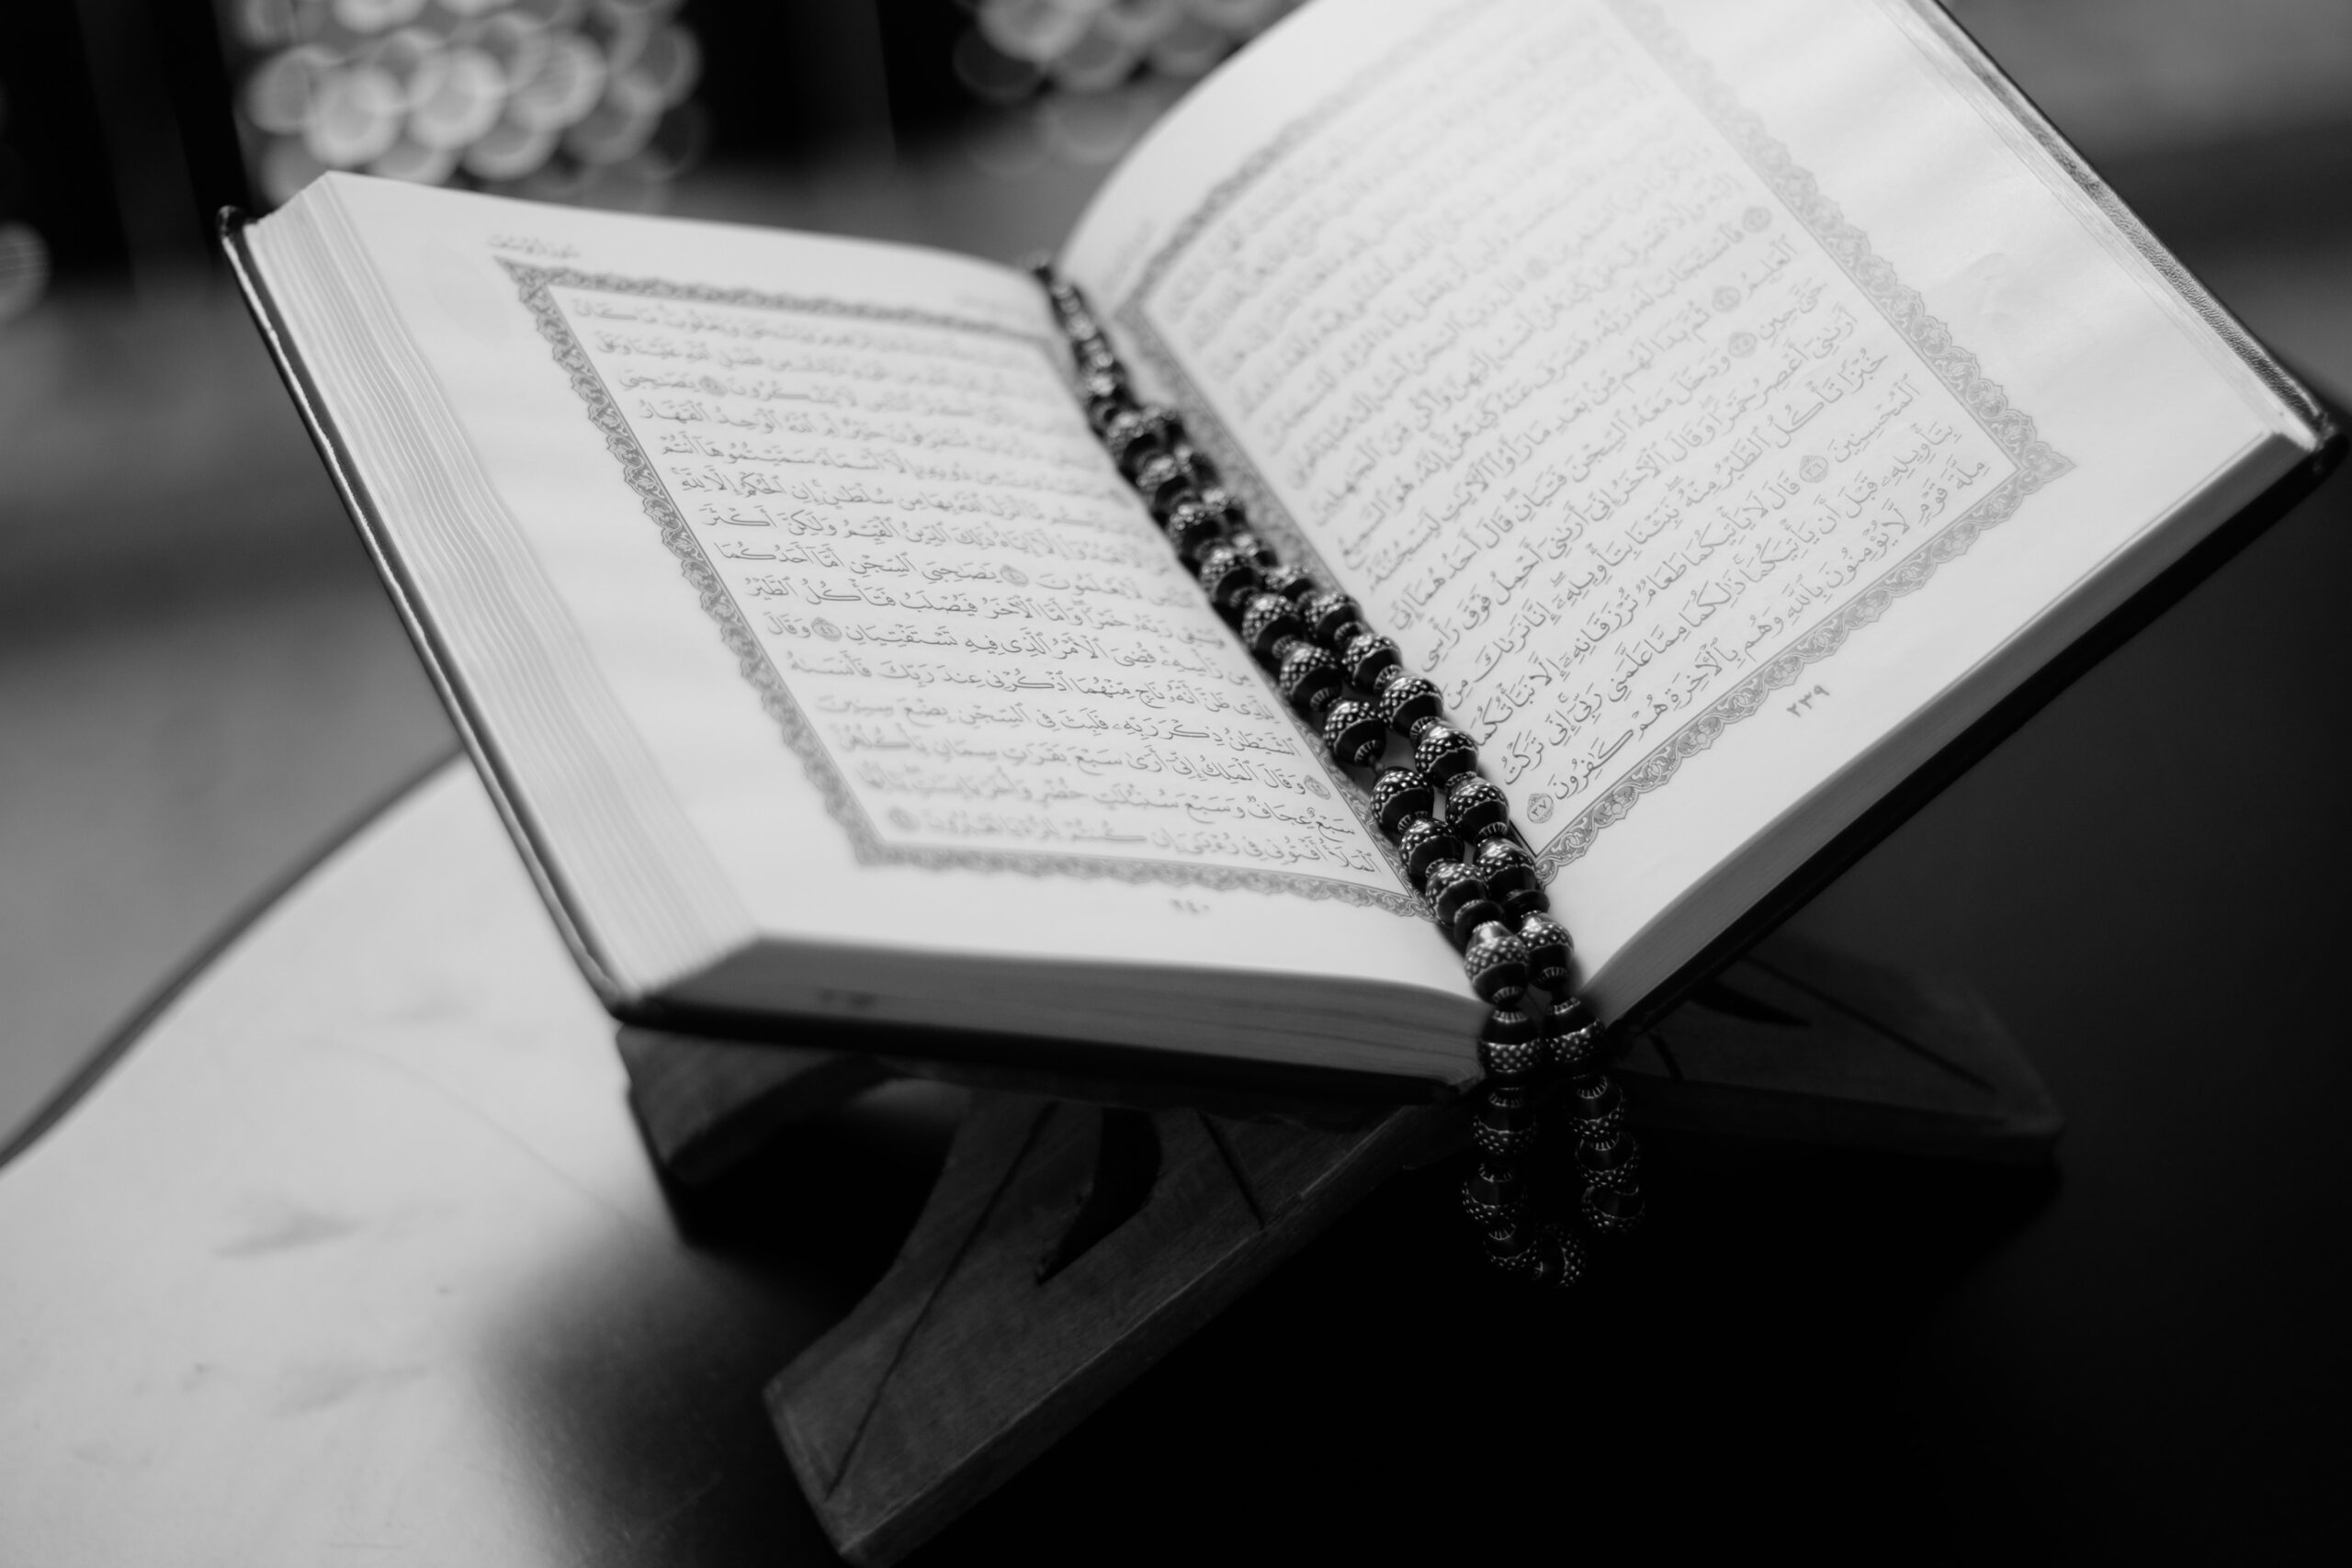 "هنا وفي تلك الحِقْبة المتفرِّدة على متنِ الدّهر في تاريخ اللّغات، نزل القرآن الكريم بلسانٍ عربيّ مُبين